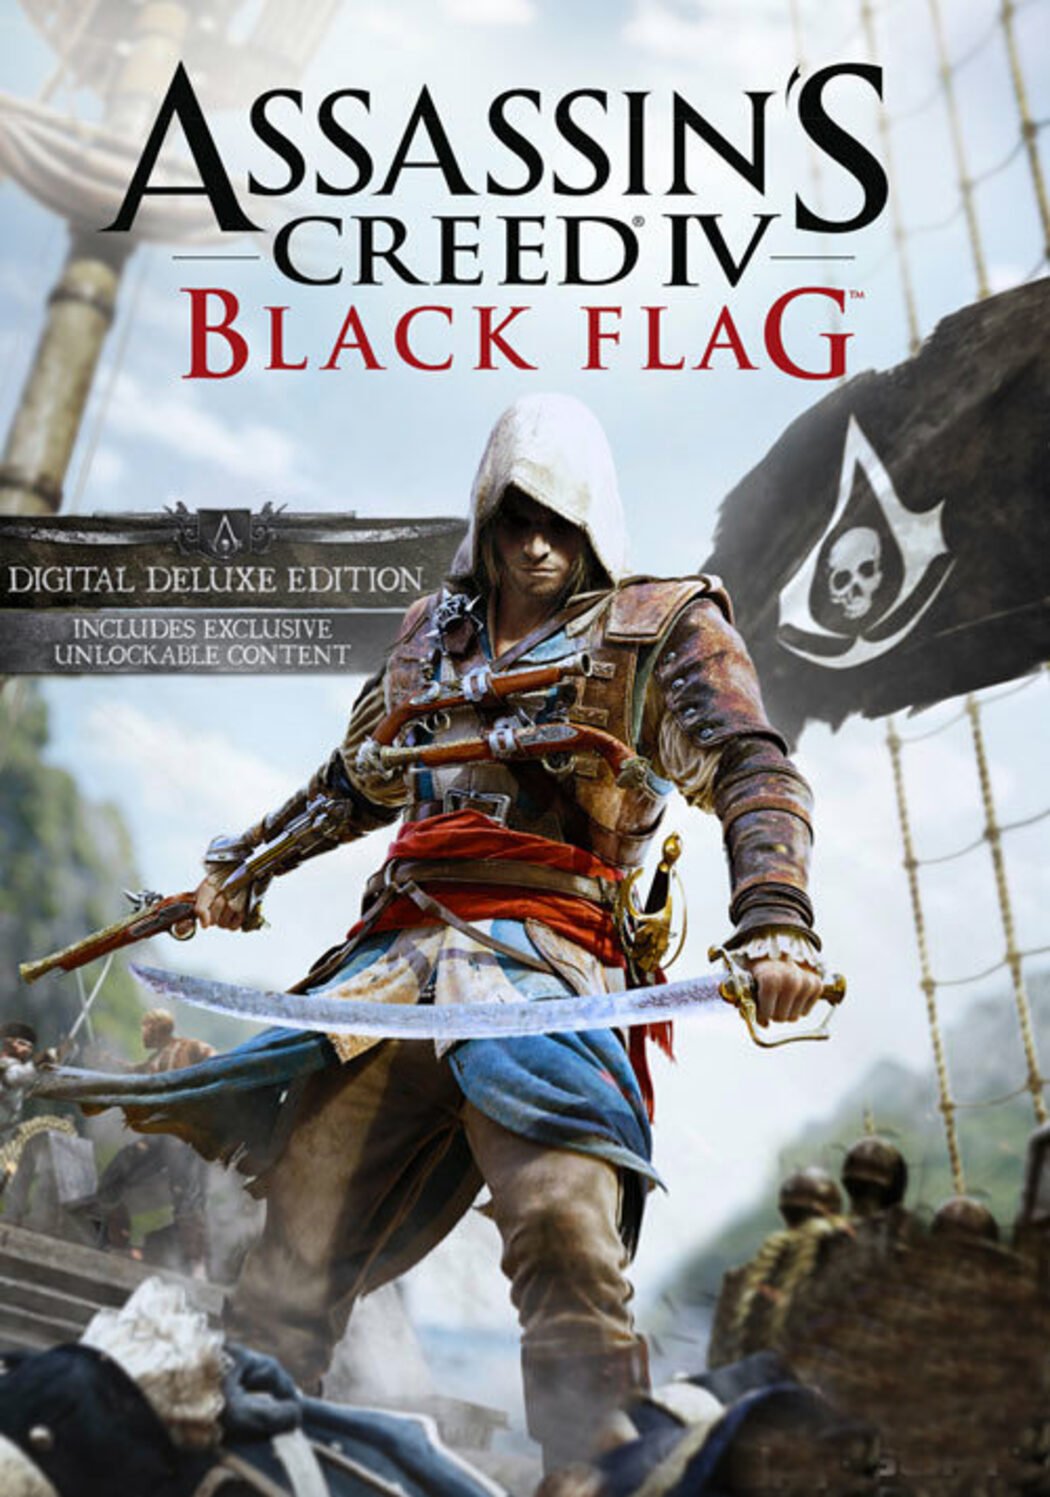 Baixe agora mesmo o app mobile de Assassin`s Creed 4: Black Flag - TecMundo